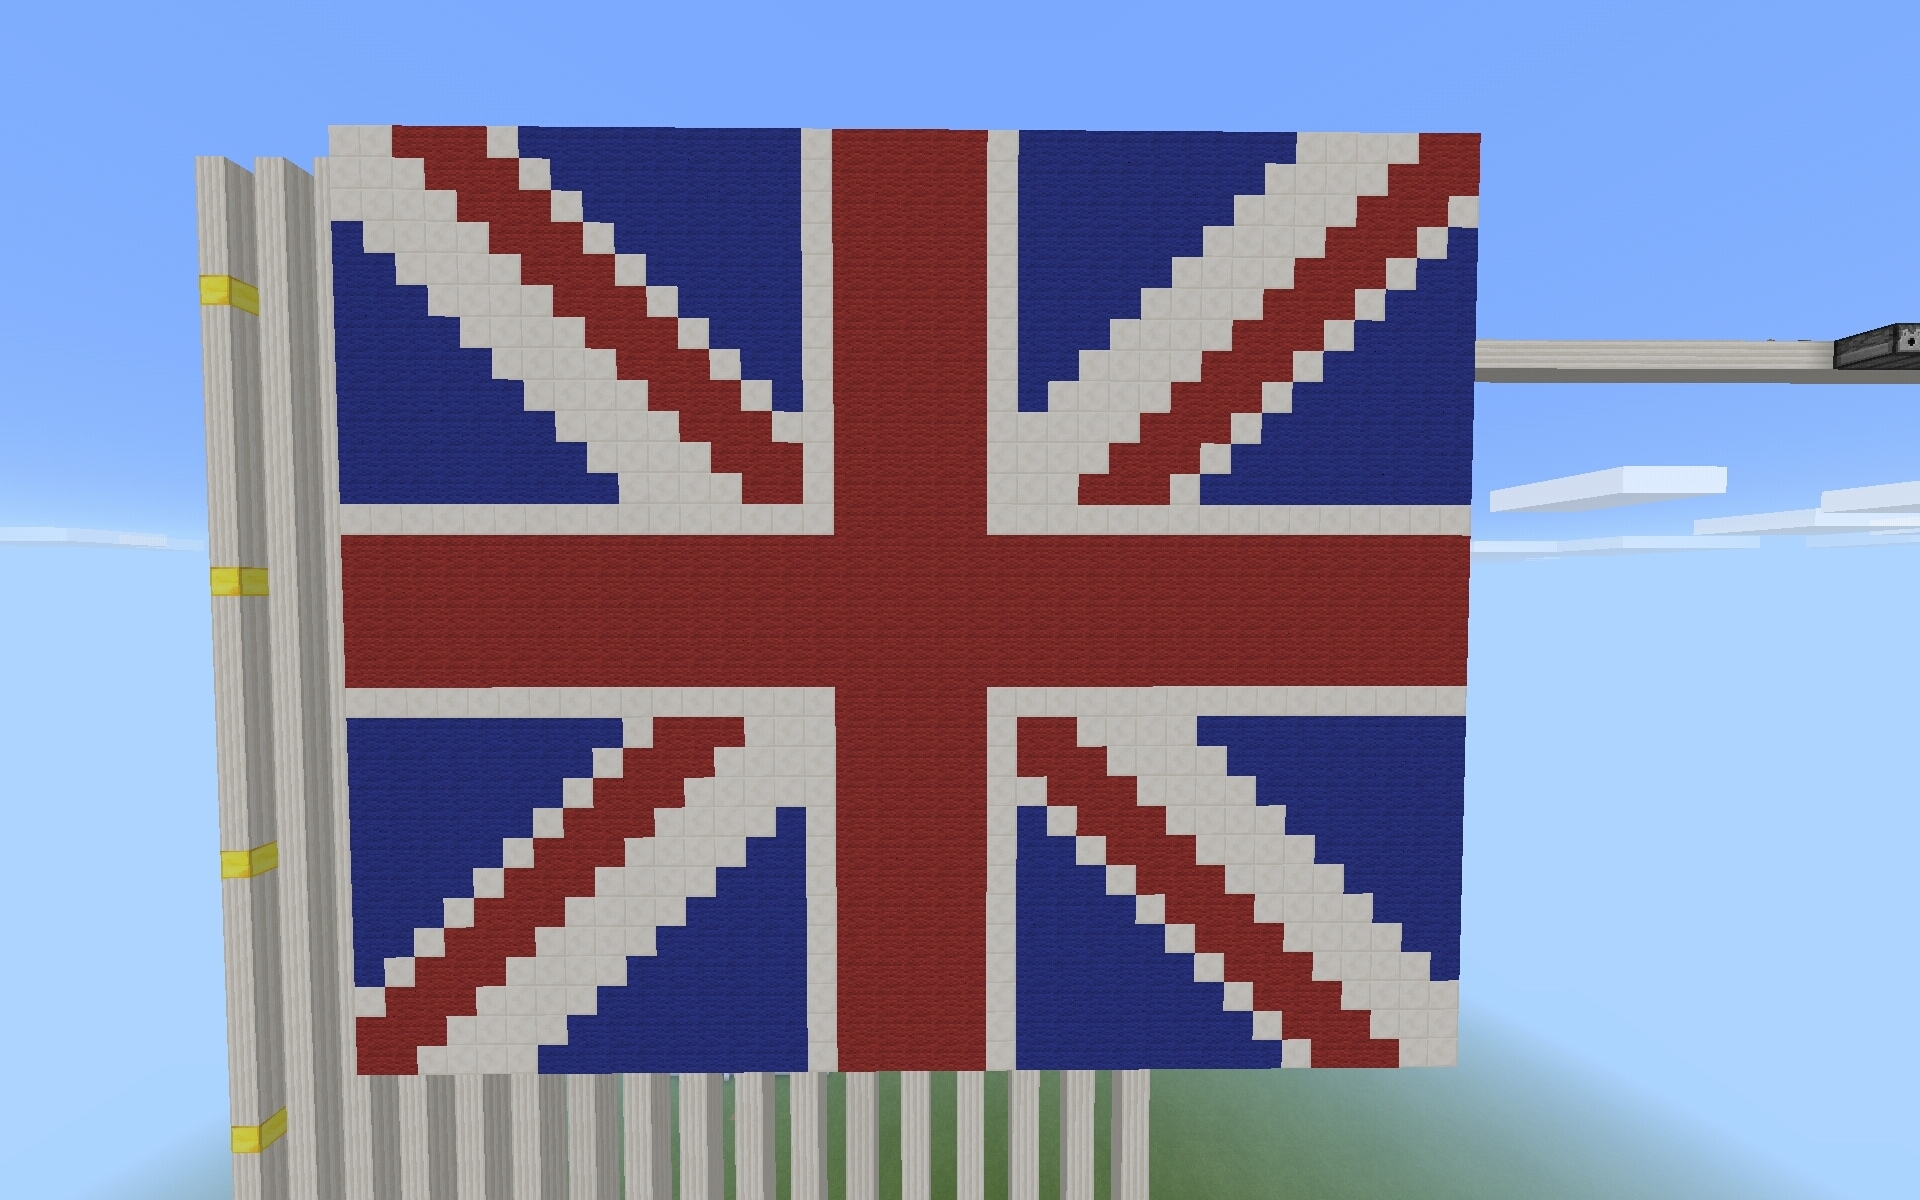 マインクラフト 今 世界で一番話題の国イギリスの国旗を作ってみた マインクラフトな日々